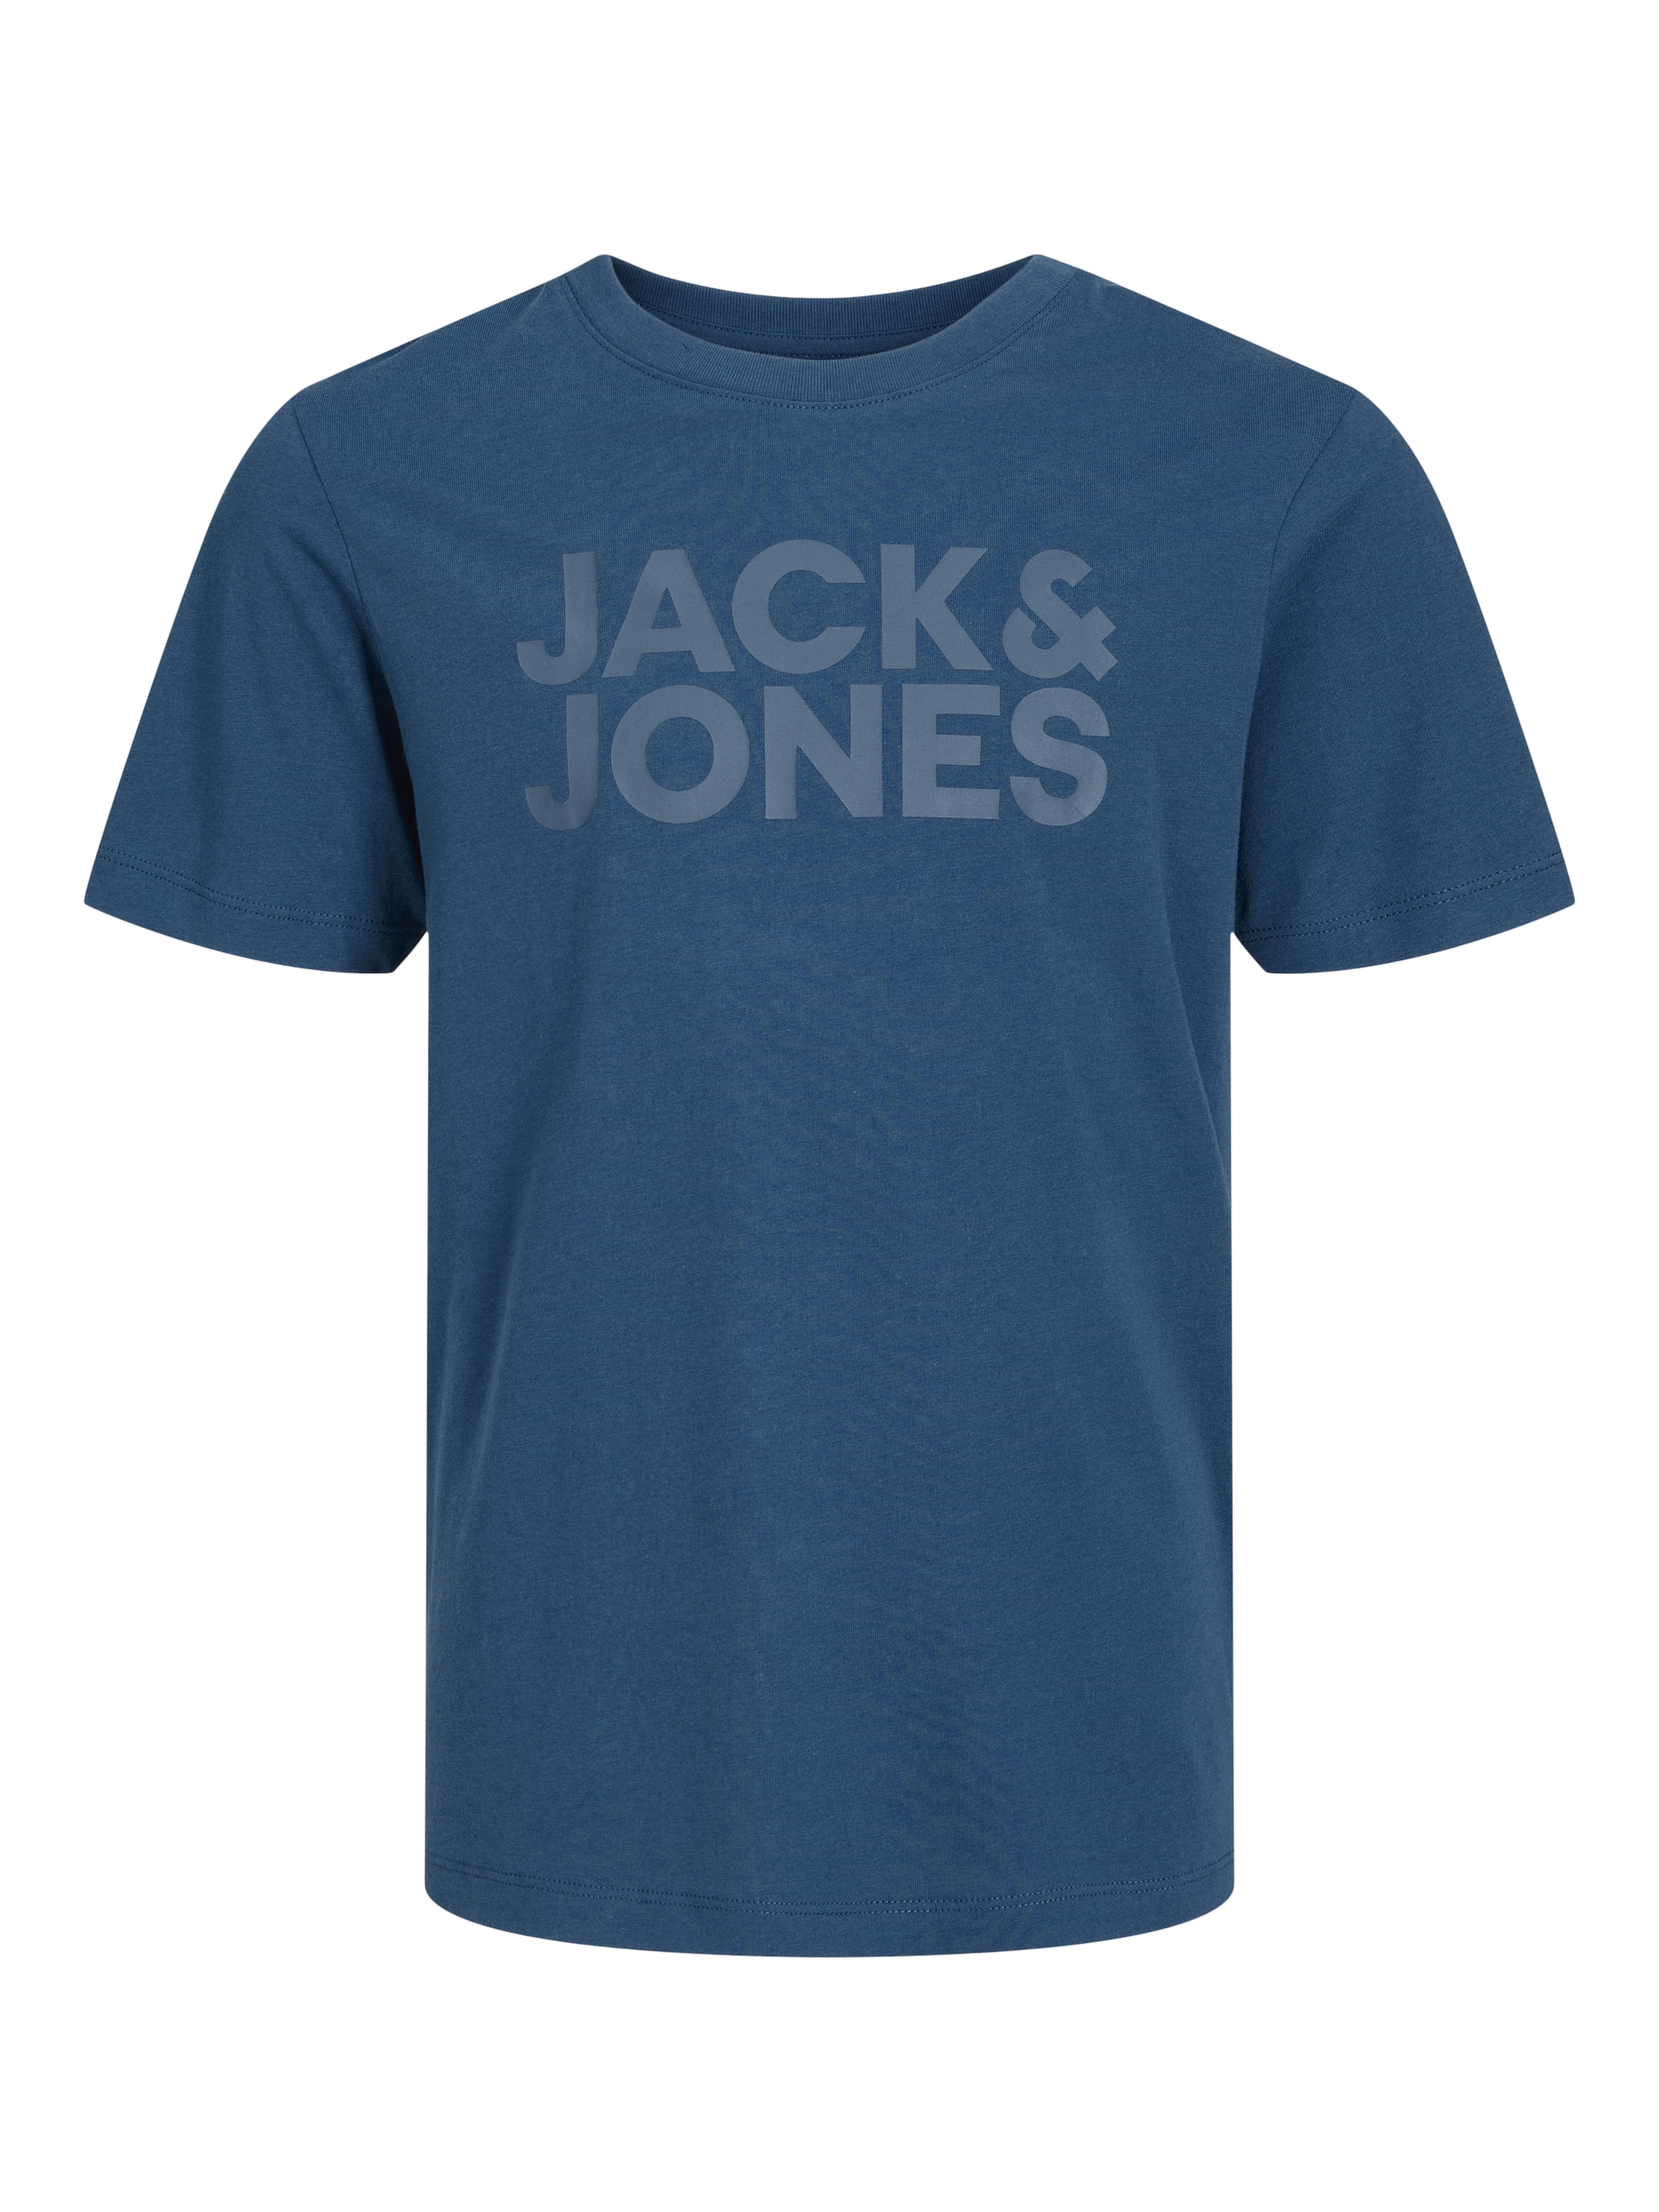 Afbeelding van Jack & Jones Jjecorp logo tee ss crew neck ss19